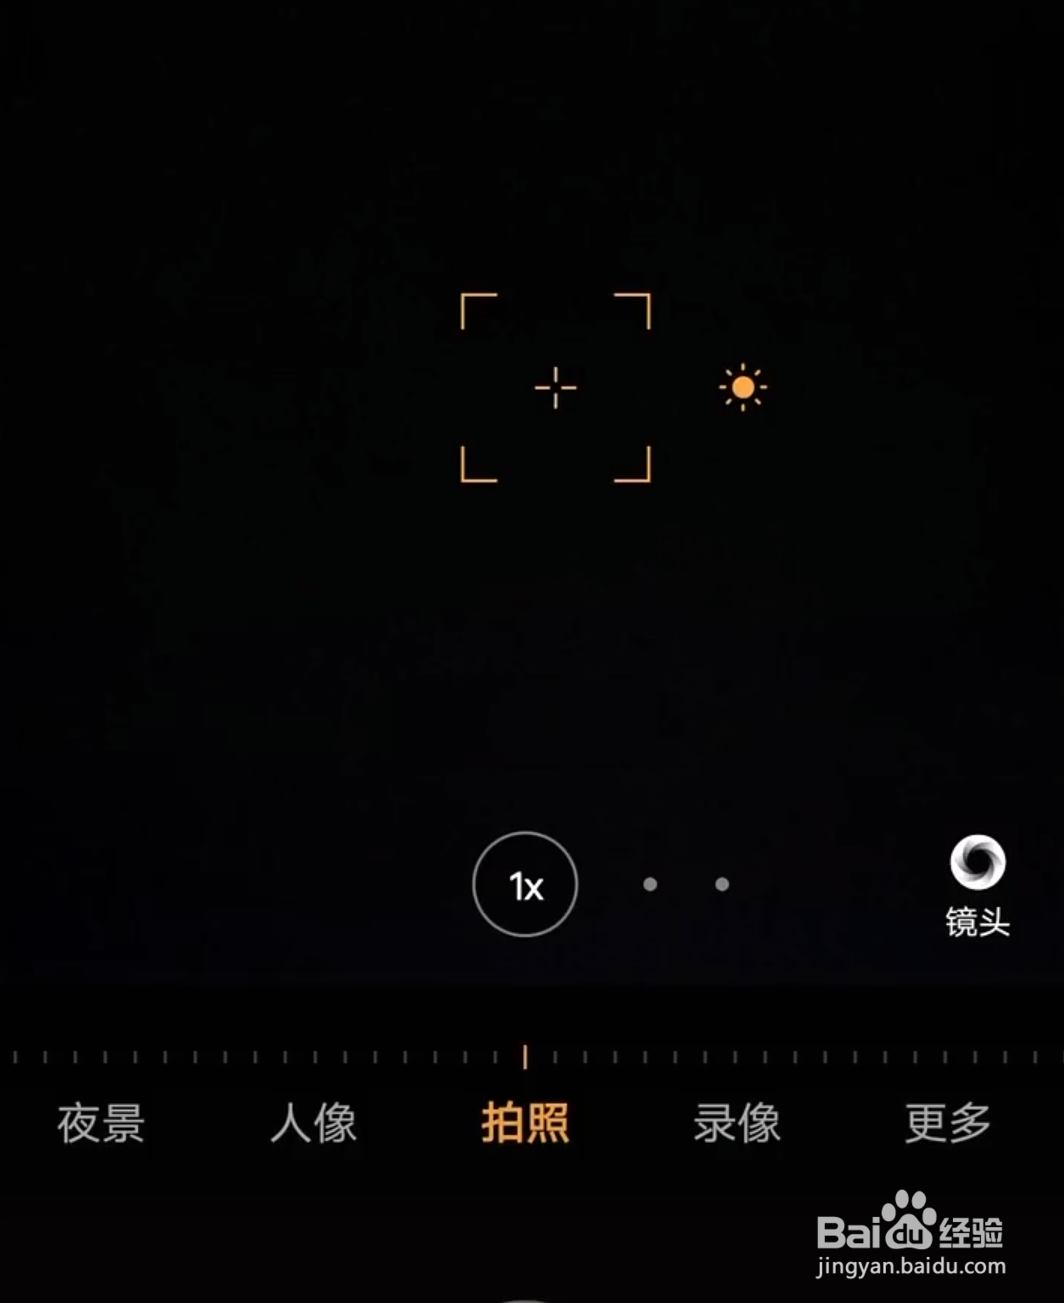 vivo手机怎么拍出好看的夜空照片？